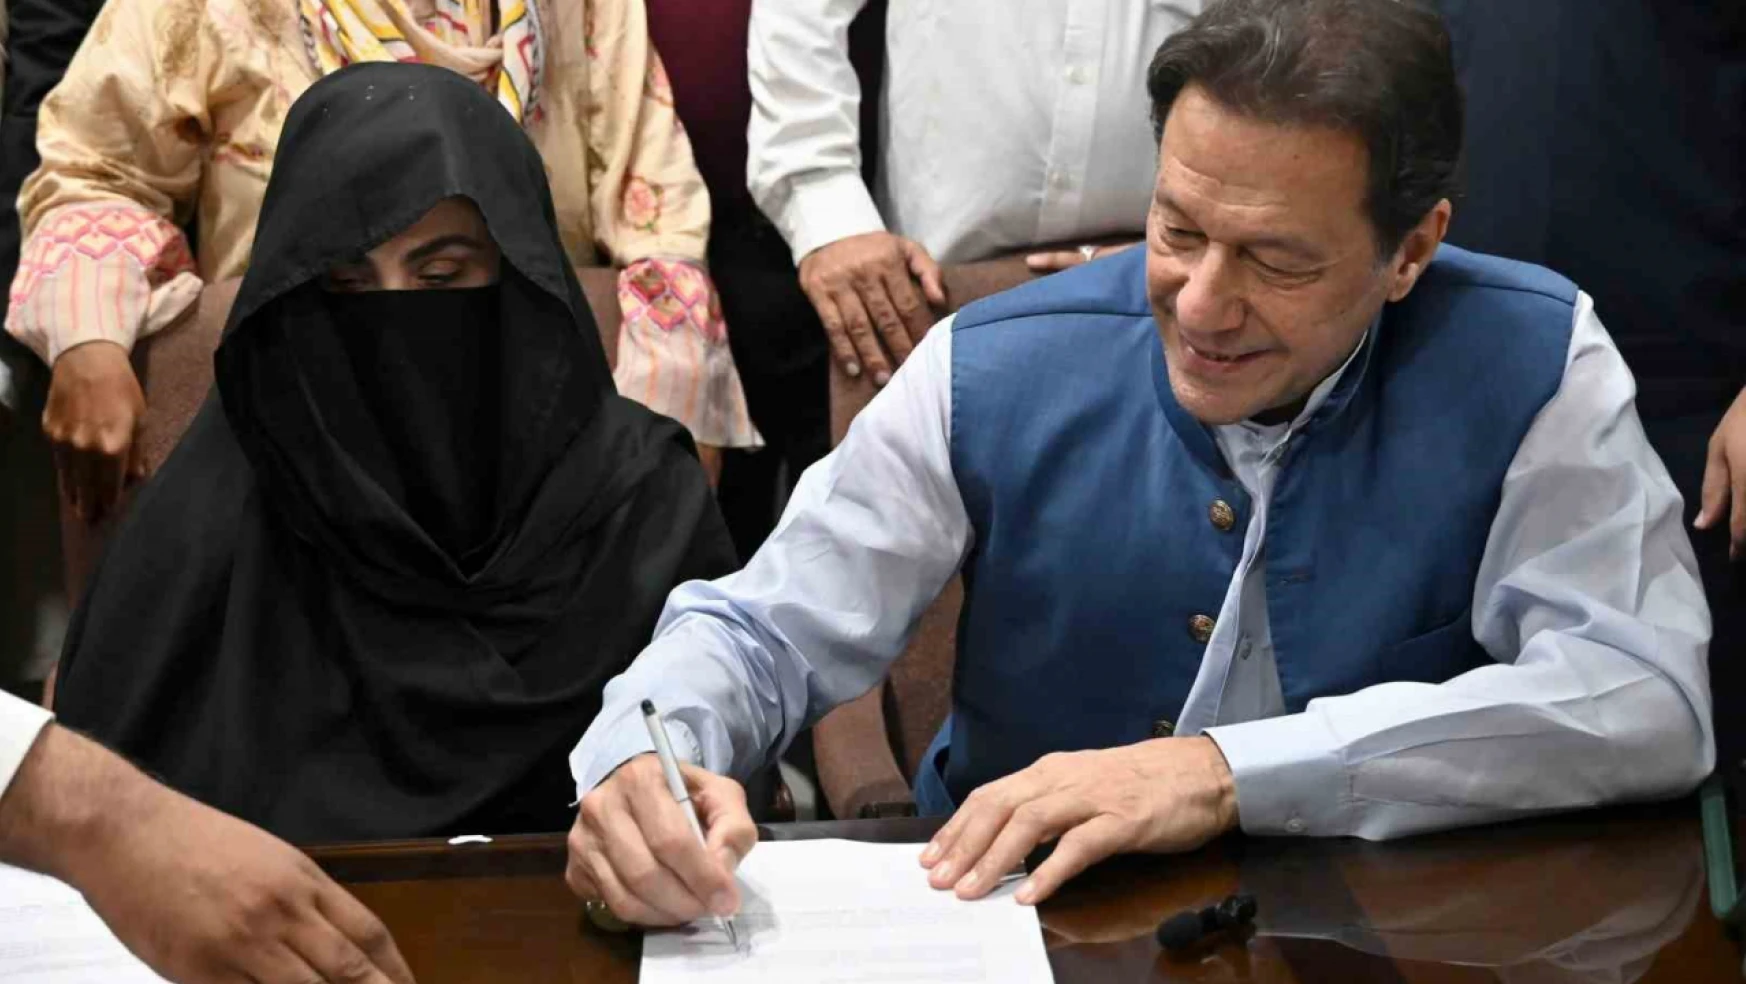 Eski Pakistan Başbakanı Imran Khan ile eşine yasa dışı evlilikten 7'şer yıl hapis cezası